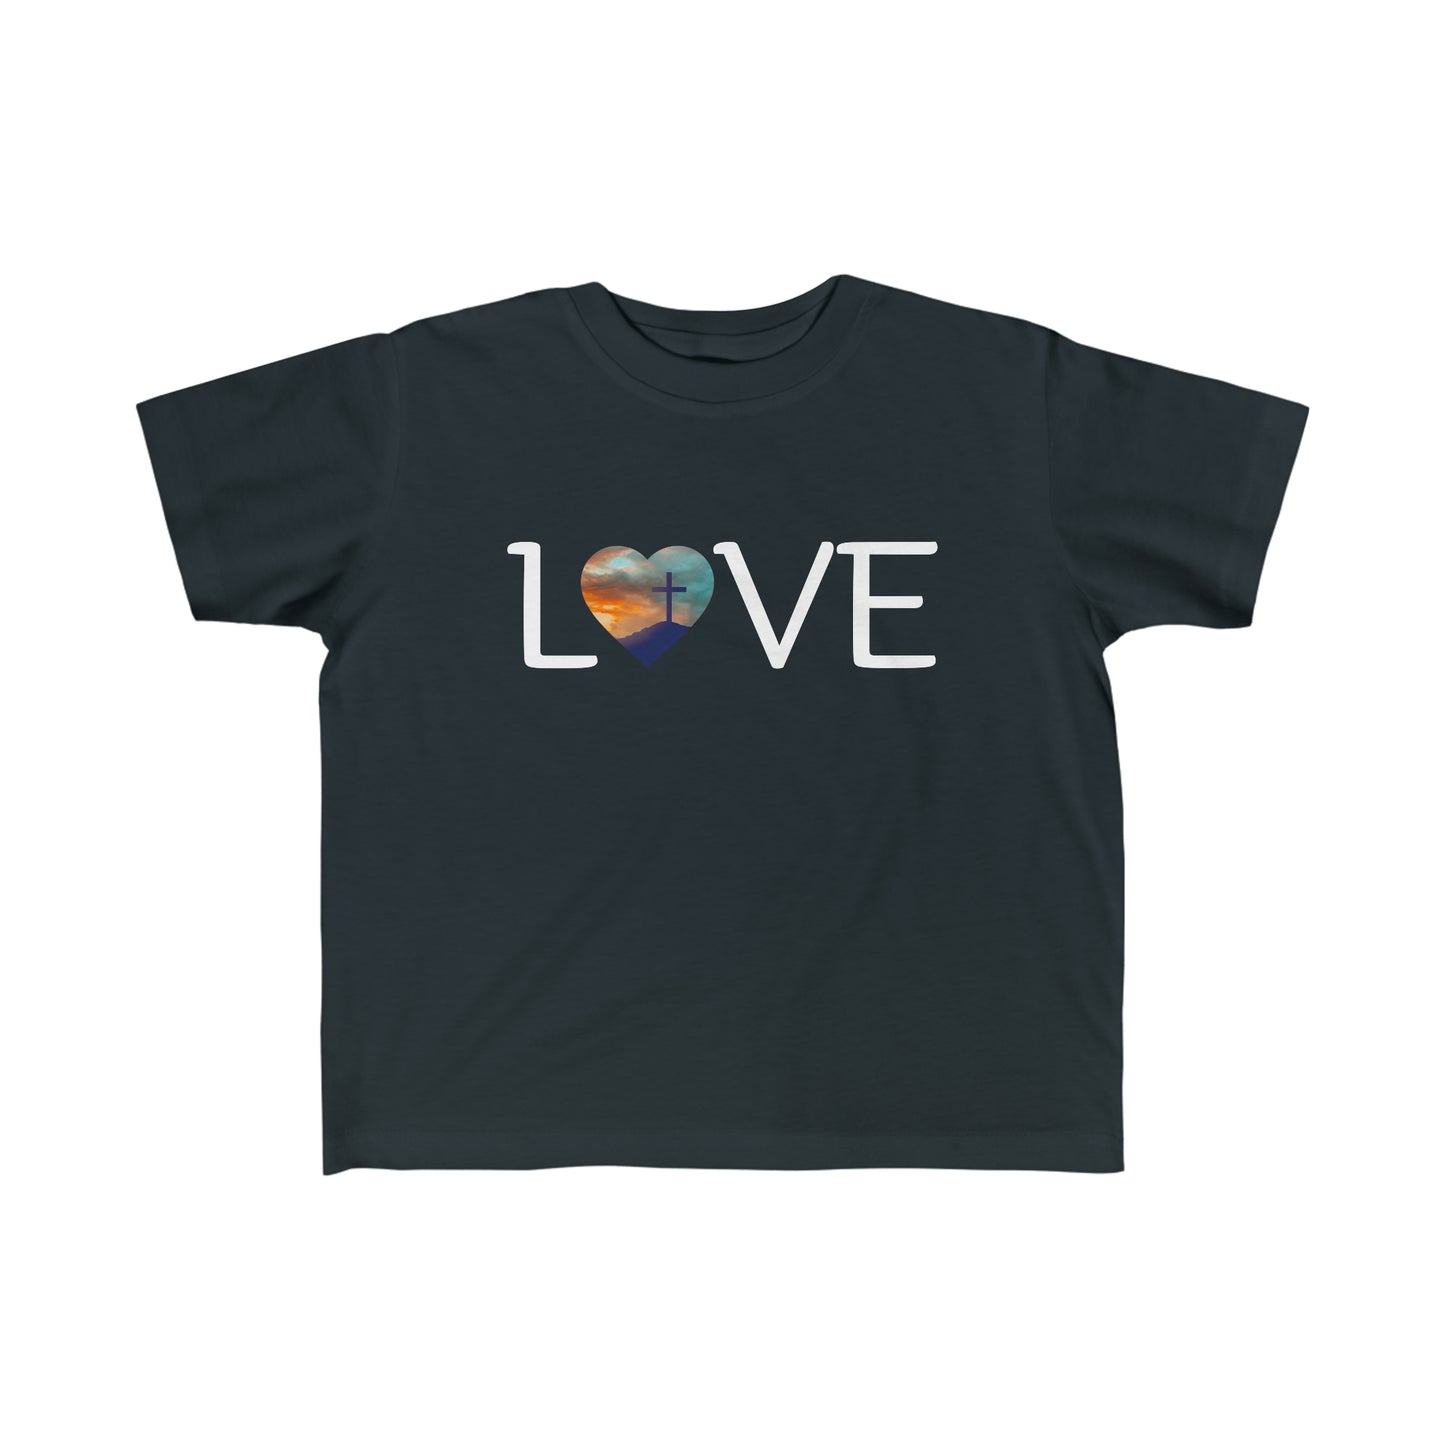 Toddler's Fine Jersey Tee, Love, Heart, Short Sleeve Kids Shirt